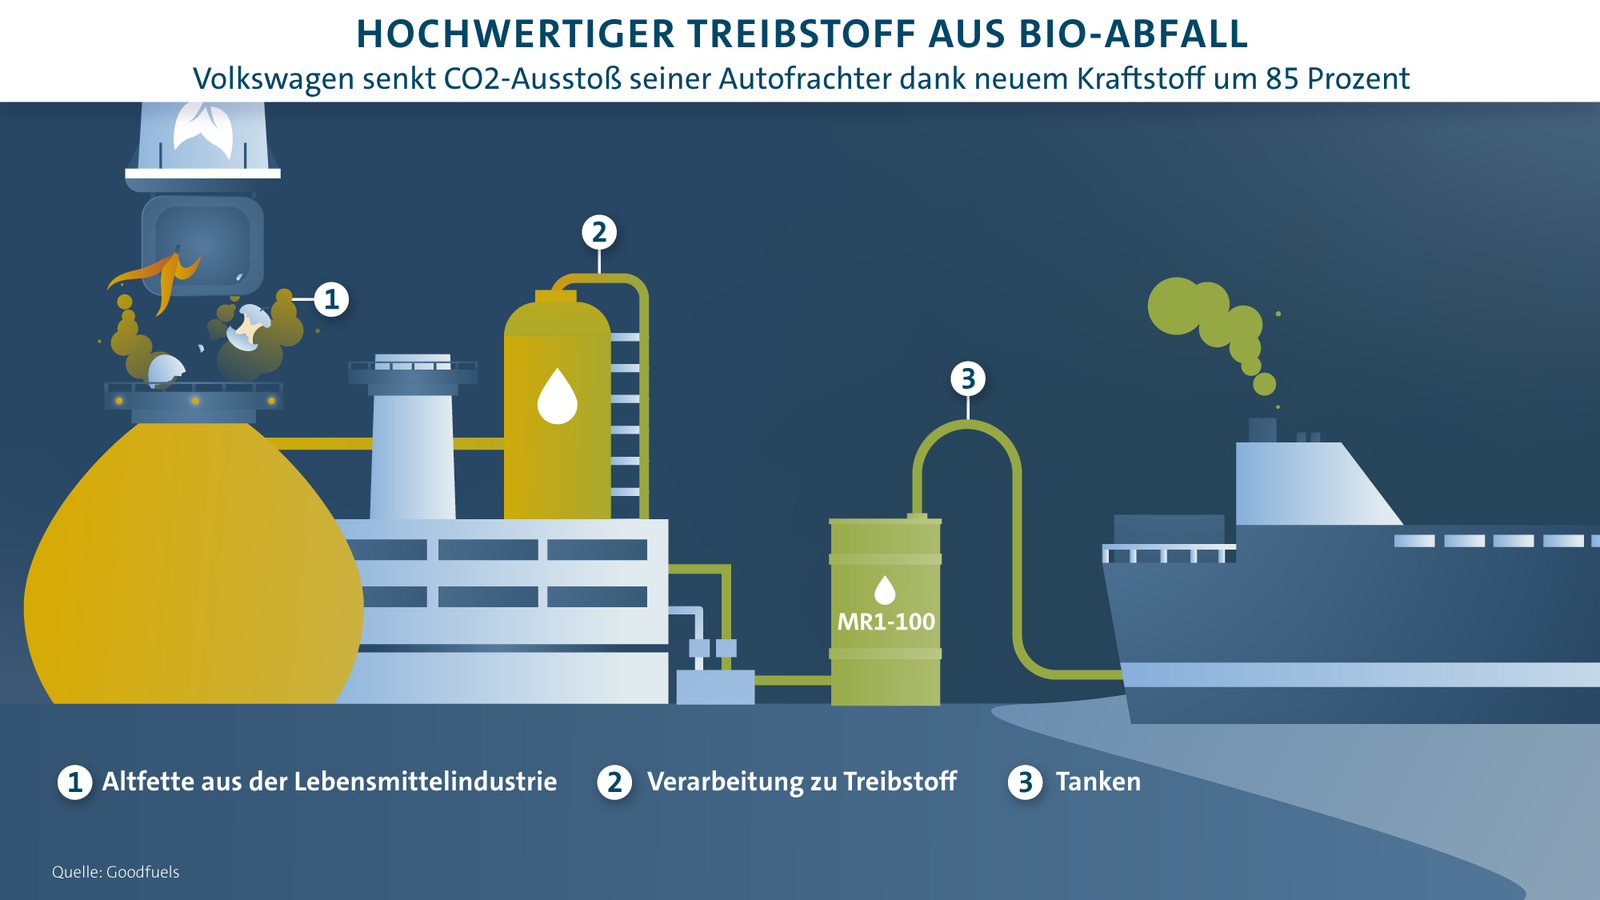 Sprit aus Abfall: Volkswagen nutzt gebrauchte Öle aus Gastronomie für Autofrachter